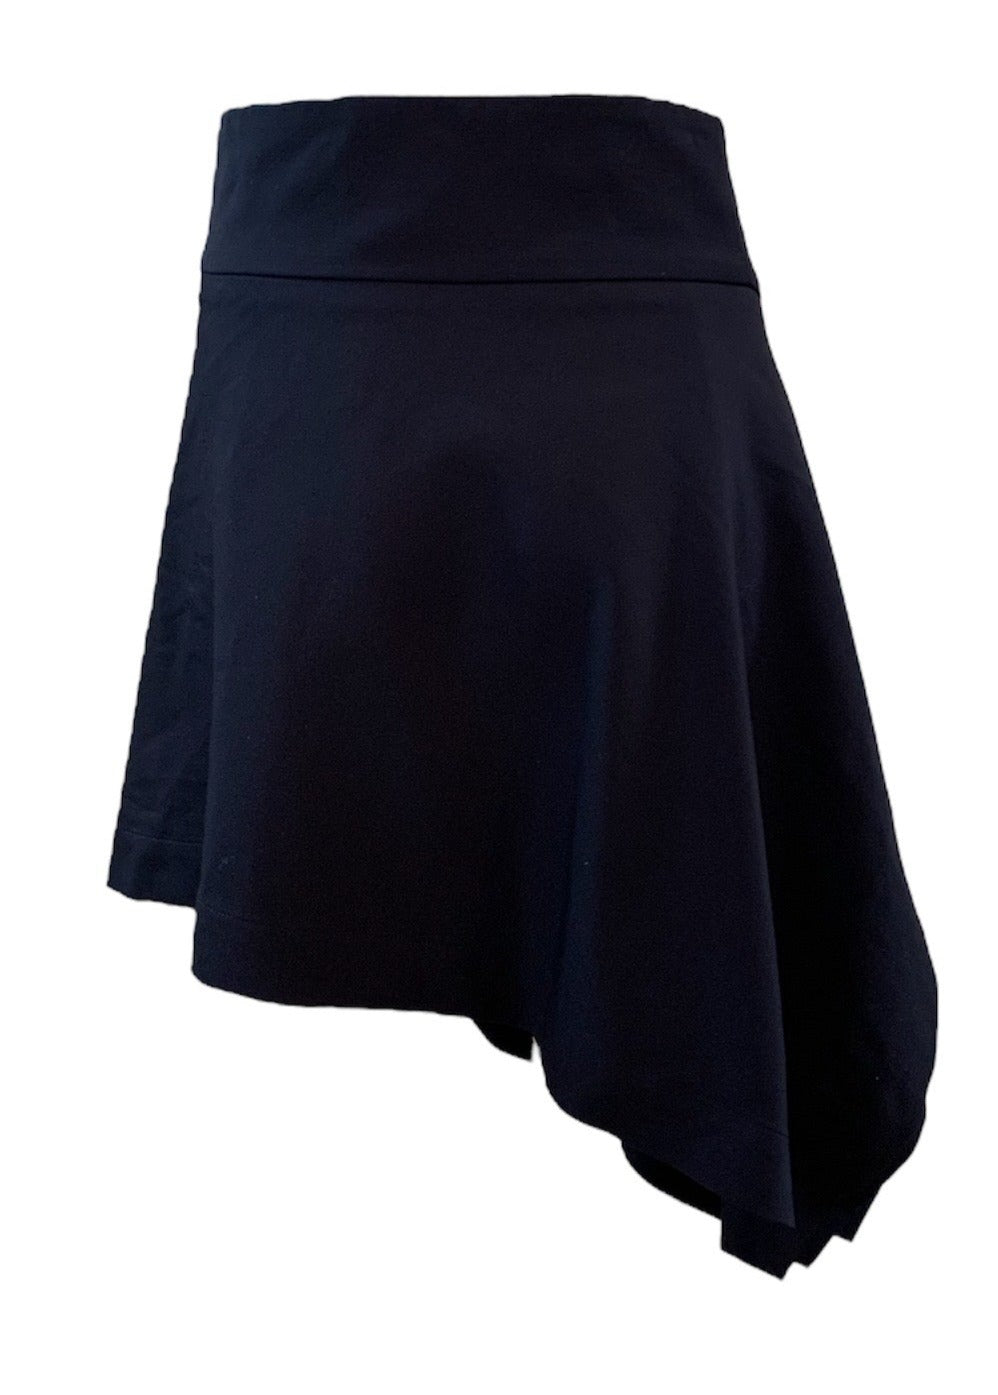 Vivienne Westwood 90s Blue Asymmetrical Wool Skirt BACK 3 of 5